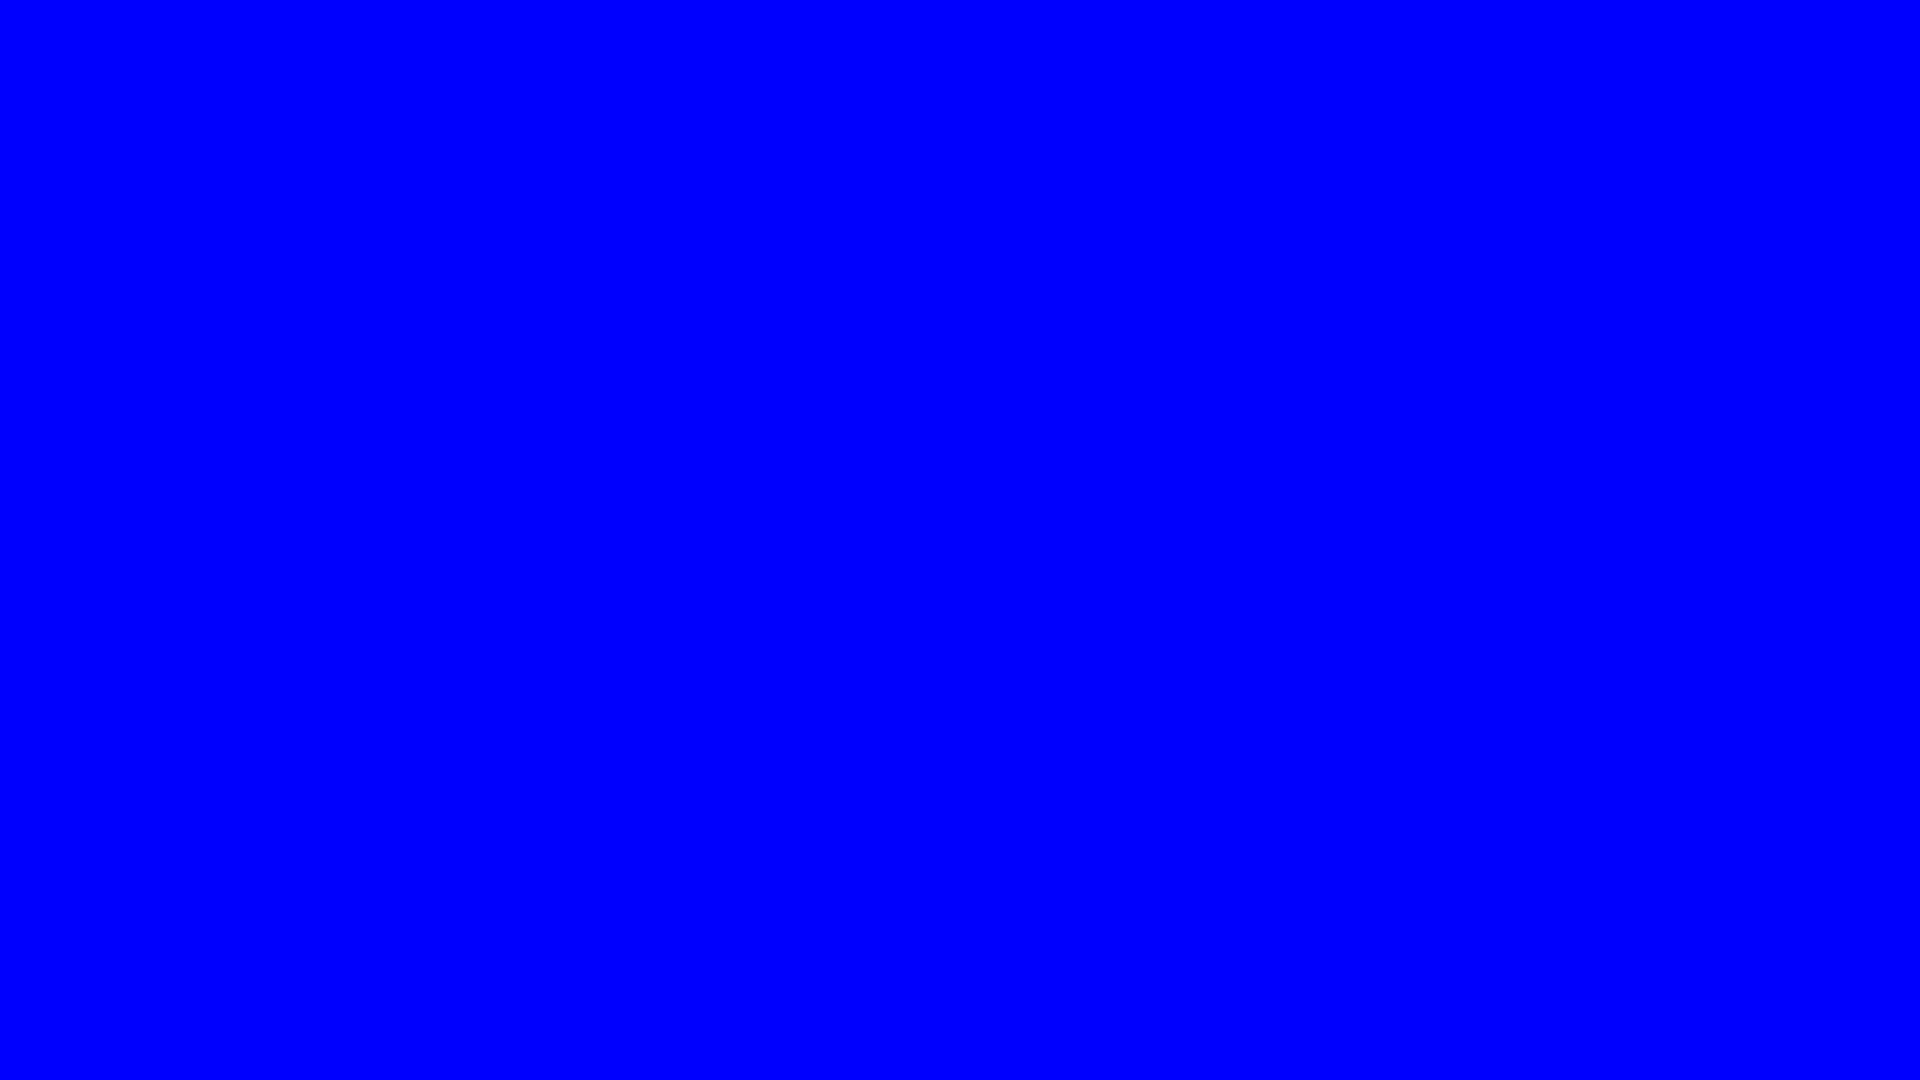 Hình ảnh test màn hình máy tính màu xanh dương